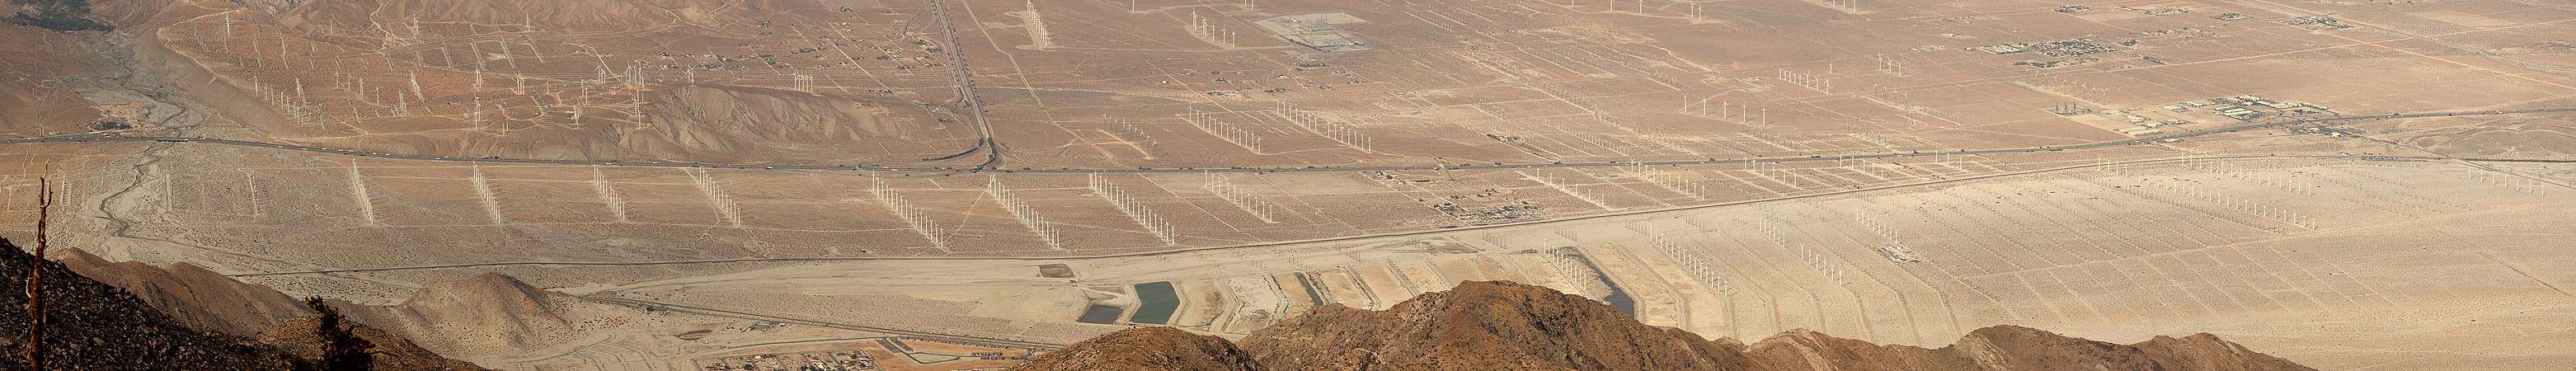 San Gorgonio Pass wind farm, by Mfield